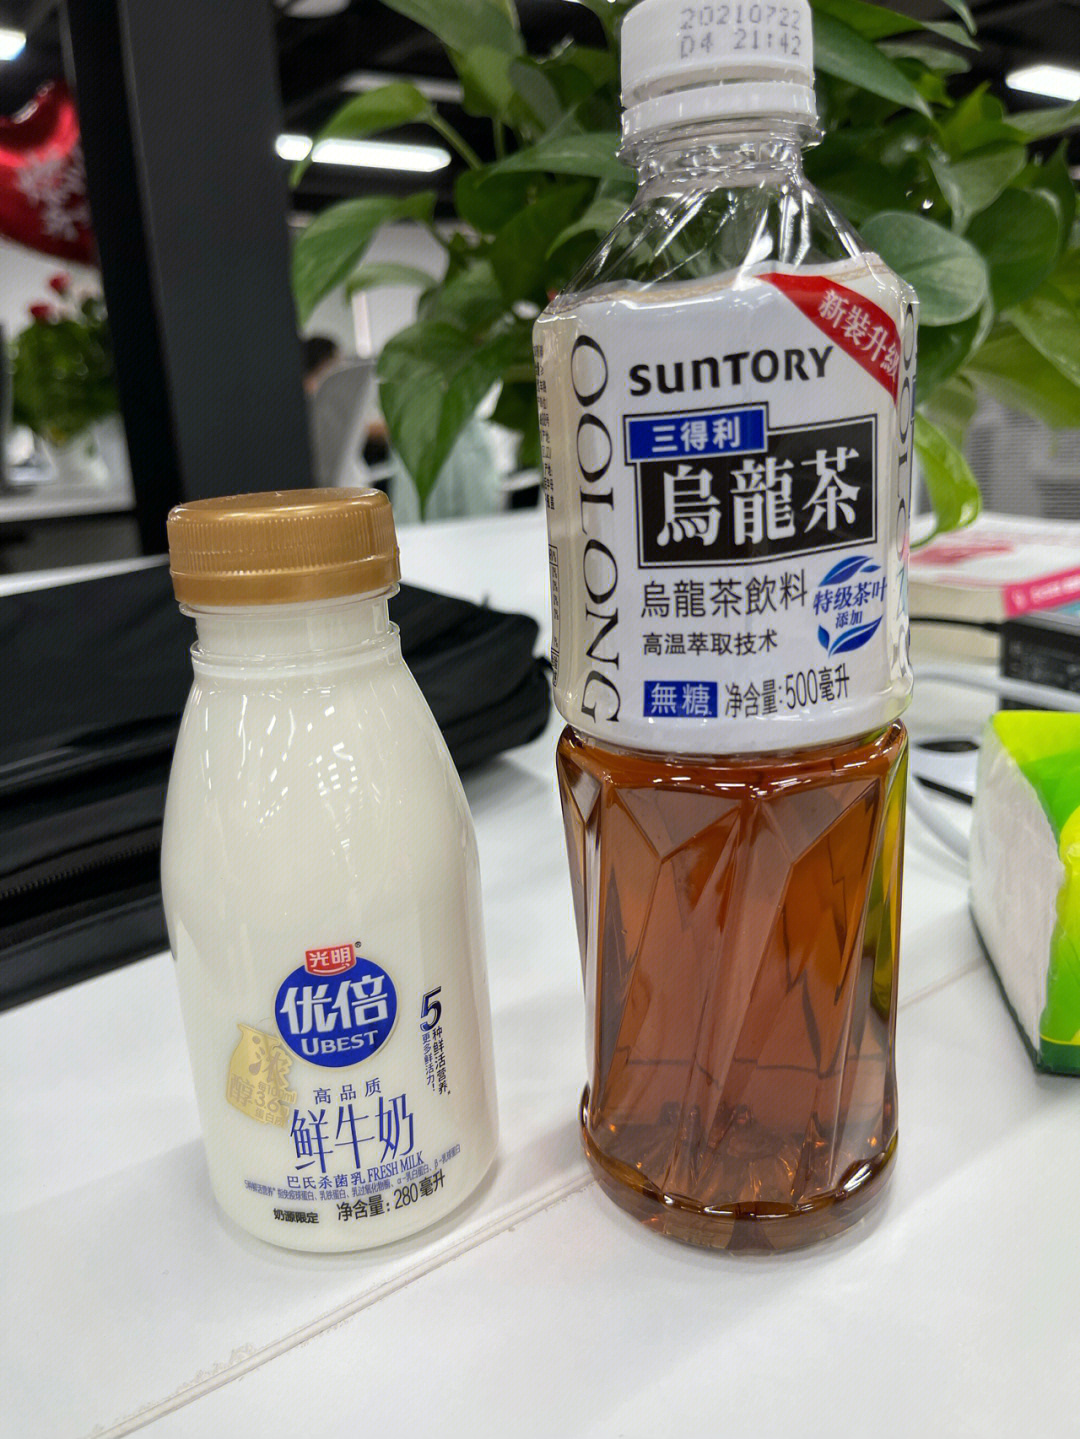 光明纯牛奶77三得利乌龙茶,无糖低脂奶茶get77喜欢奶味浓的多加奶